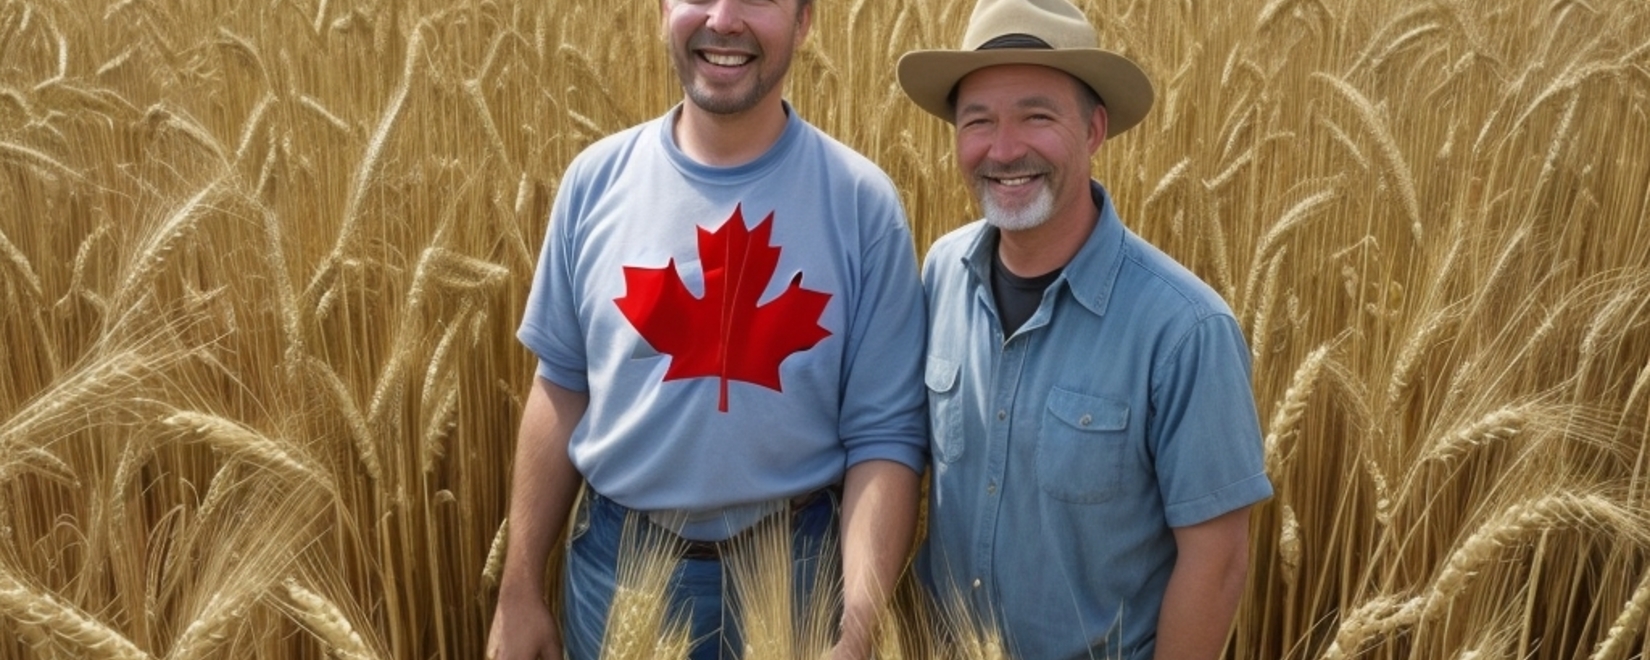 Качество пшеницы в Канаде остается высоким, несмотря на снижение урожайности